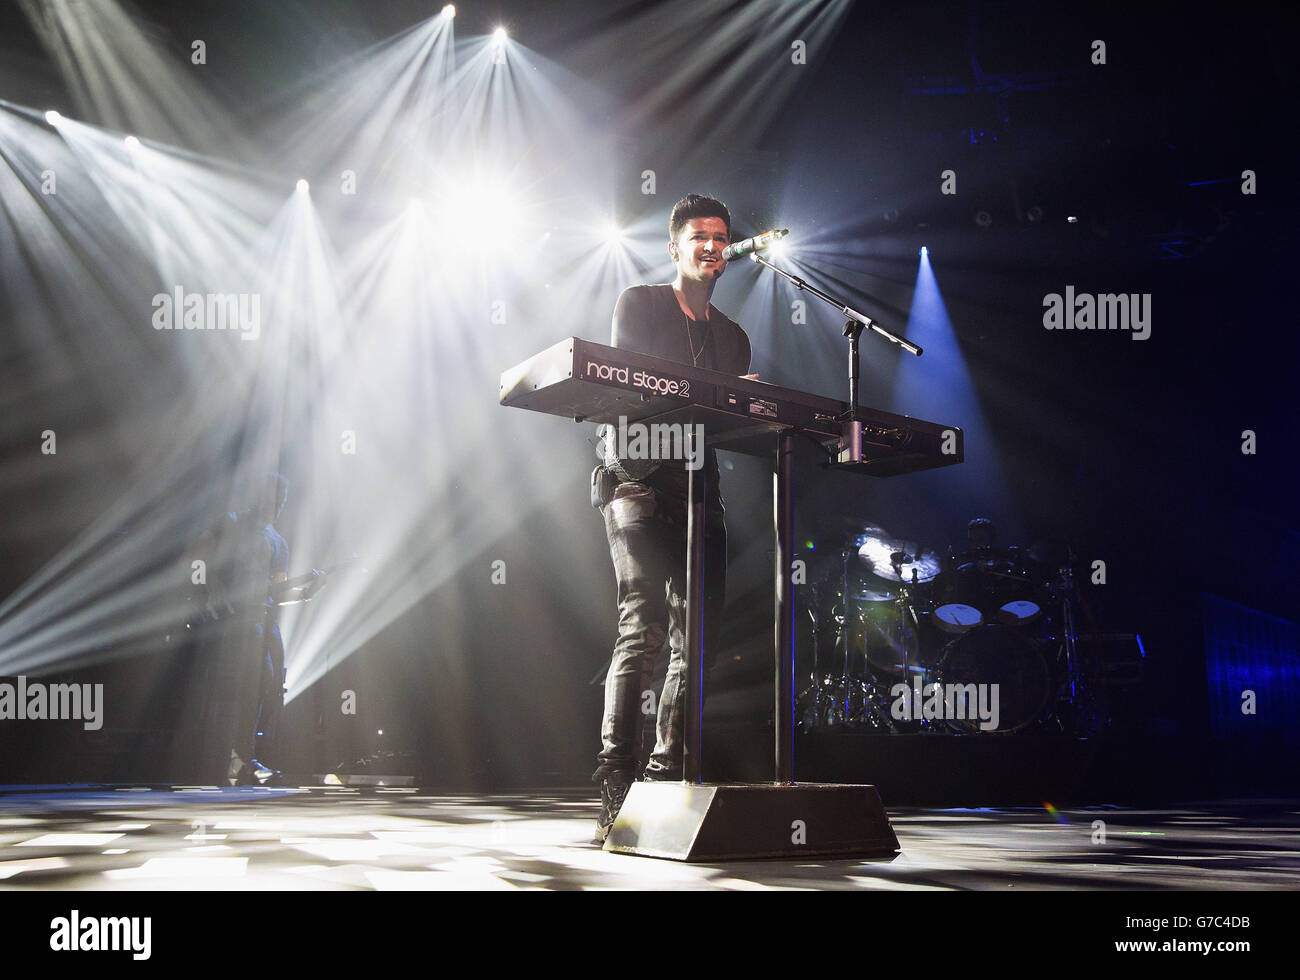 Danny o'Donoghue de The Script actúa en el escenario en el iTunes Festival en la Roundhouse de Londres. Foto de stock